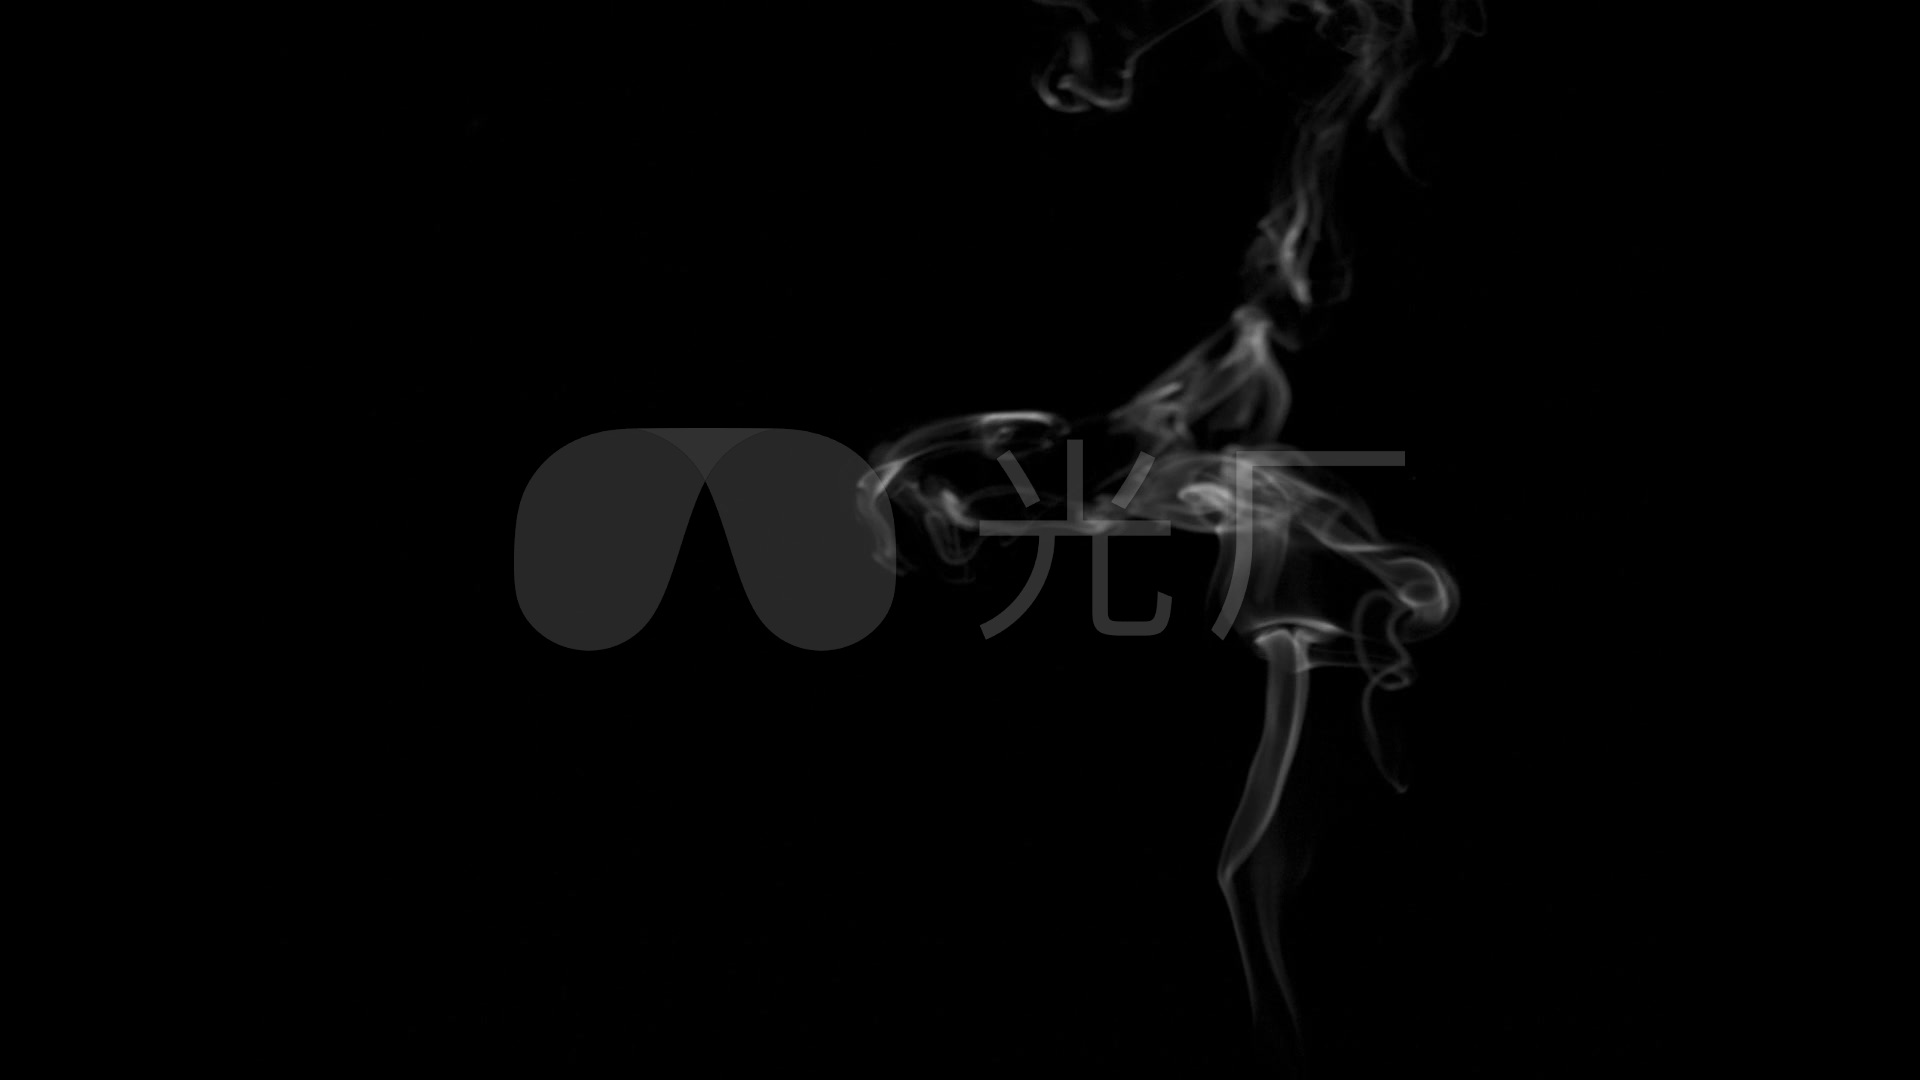 烟 烟雾背景 烟雾抠像 烟雾通道 一缕烟